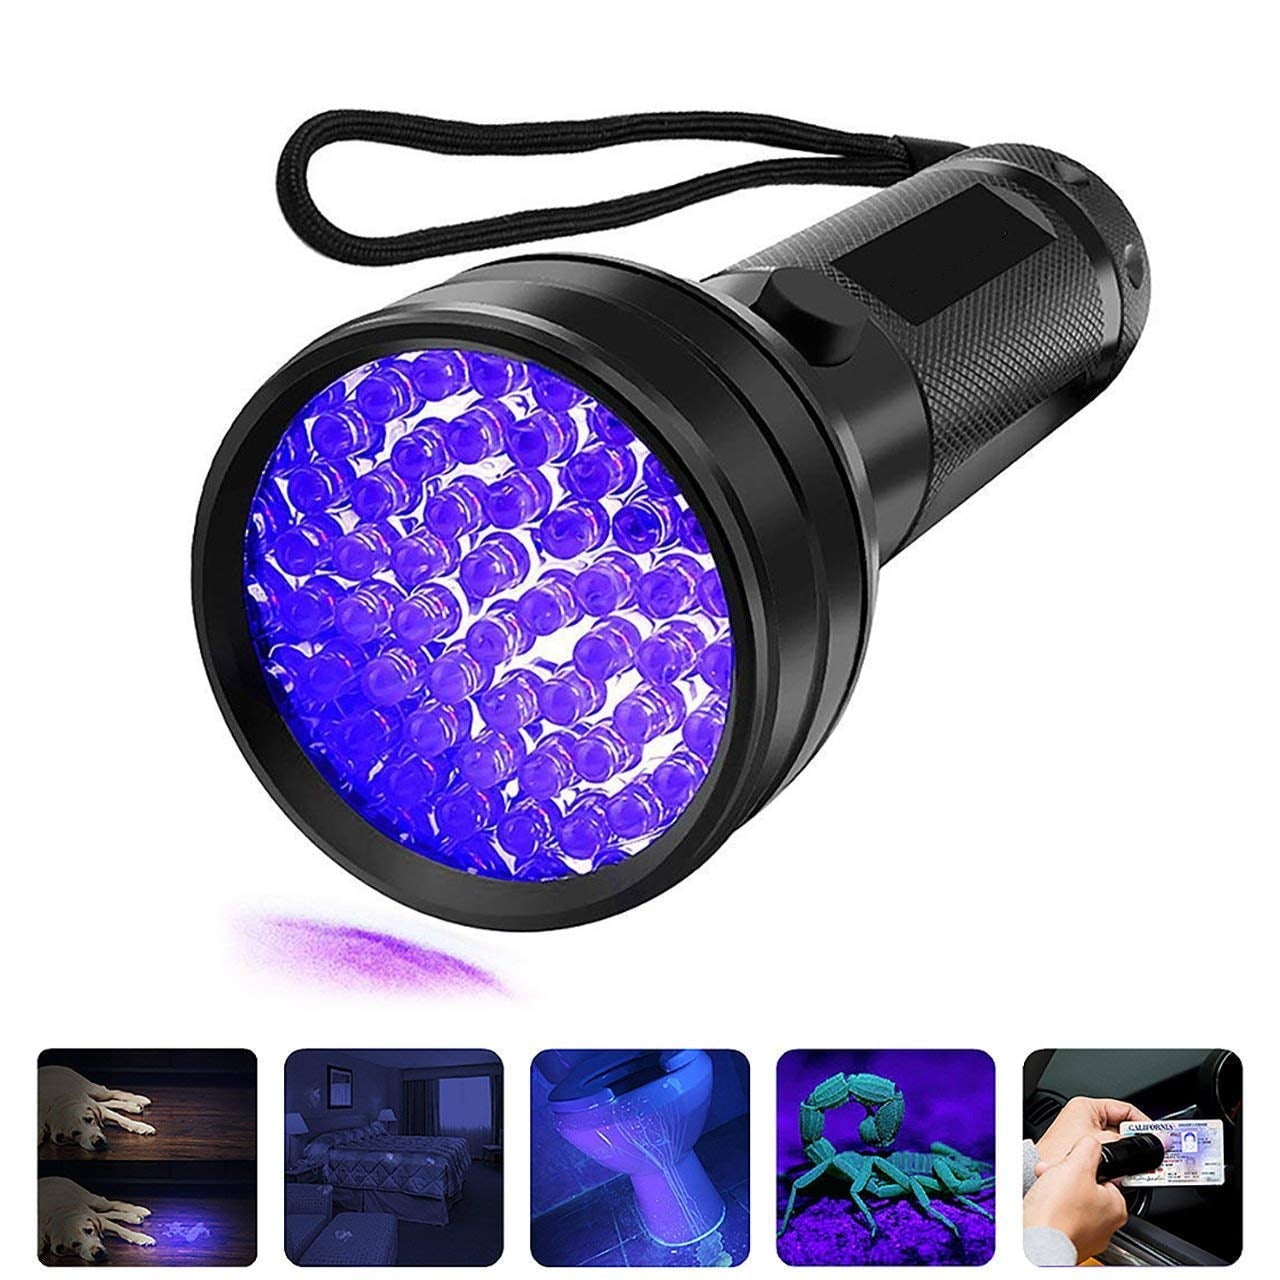 UV 100 Leds Flashlight 395nm Ultra Violet Torch Light Lamps Blacklight DetecPF 